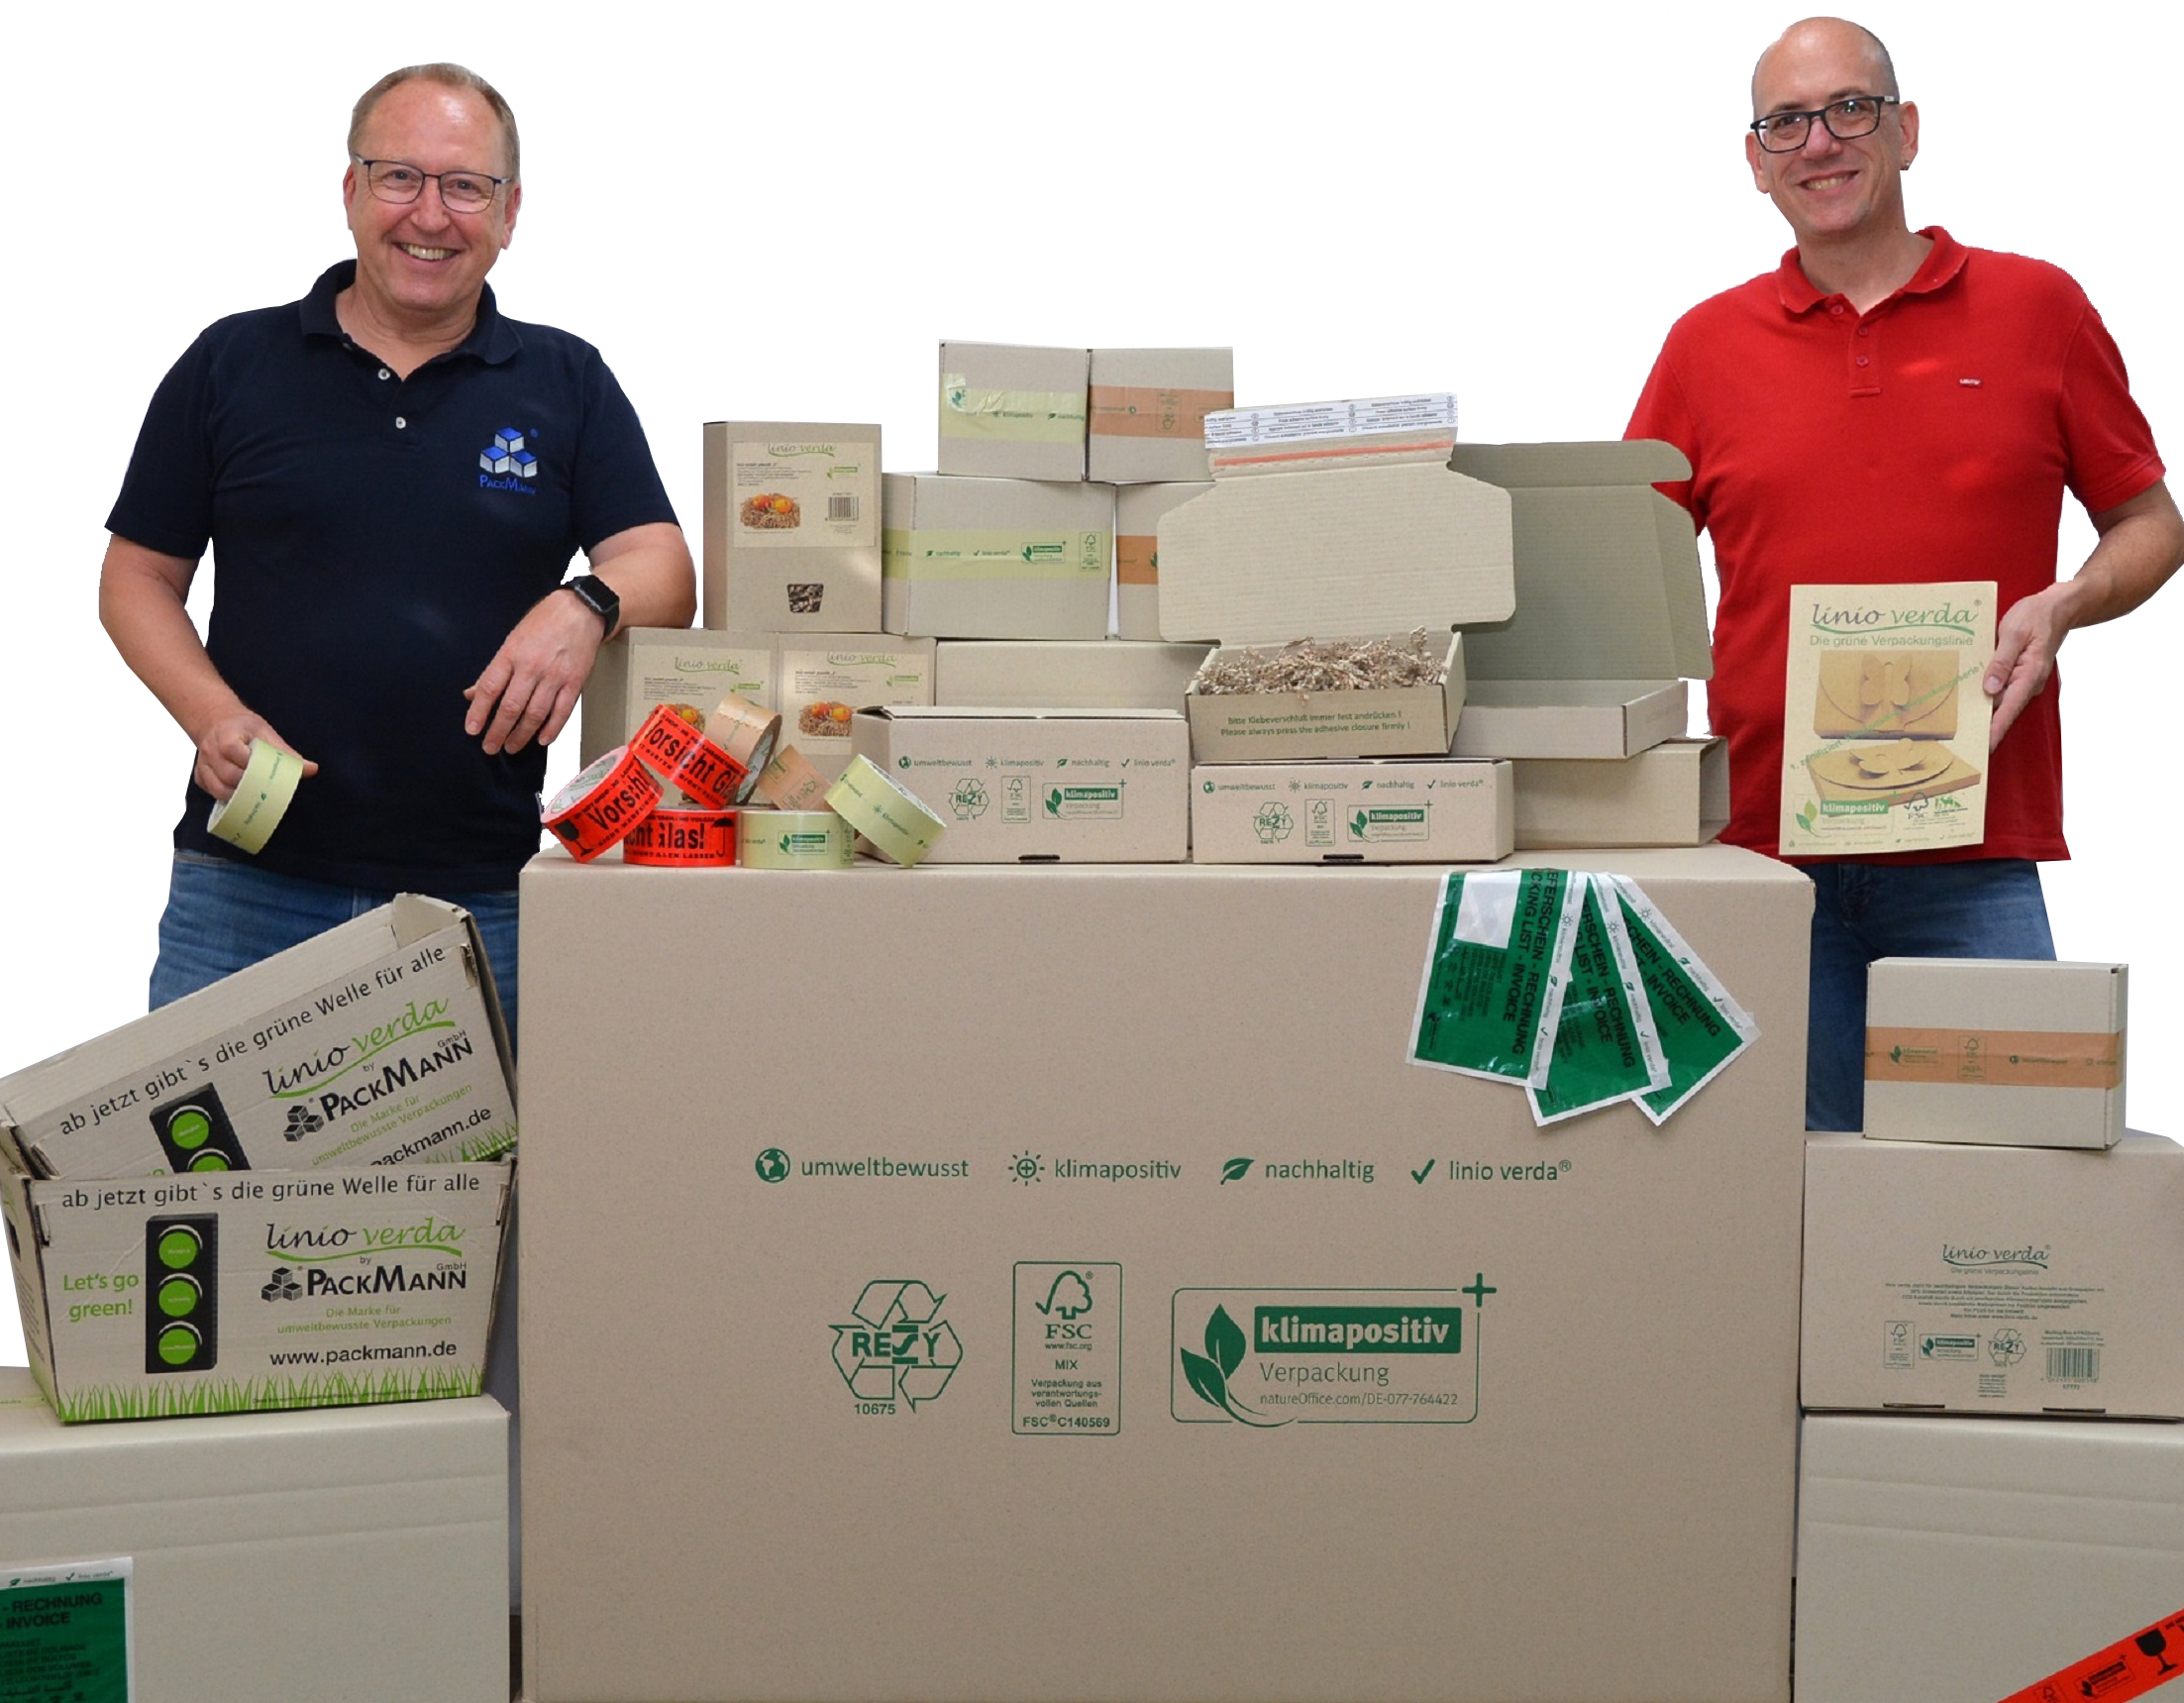 Frank Westermann (l.) und Volker Thorn (r.), die Geschäftsführer der Packmann GmbH, sind stolz auf ihre klimapositive Verpackungslinie.